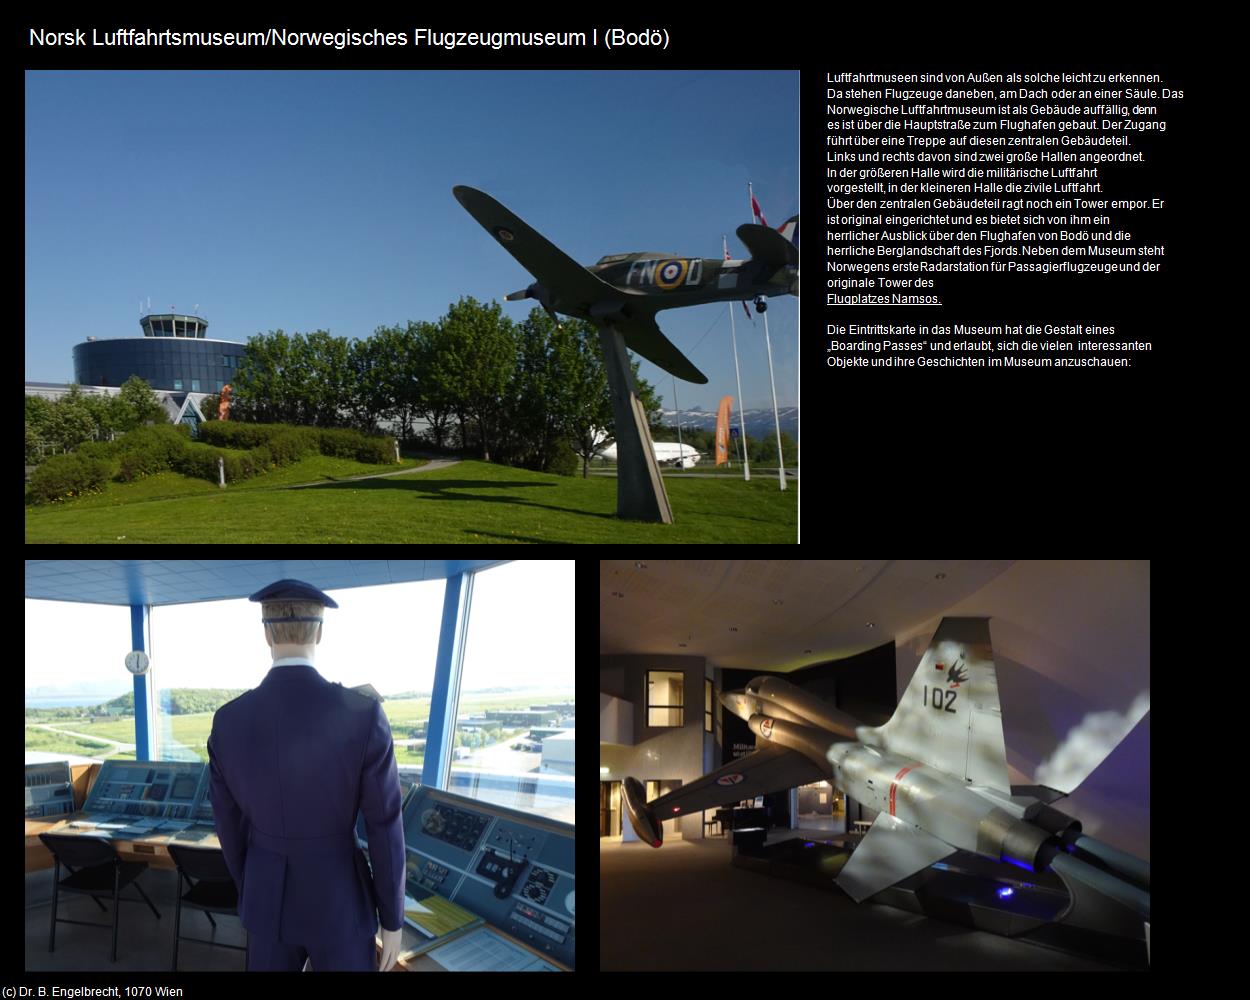 Norsk Luftfahrtsmuseum I (Bodö) in Kulturatlas-NORWEGEN(c)B.Engelbrecht